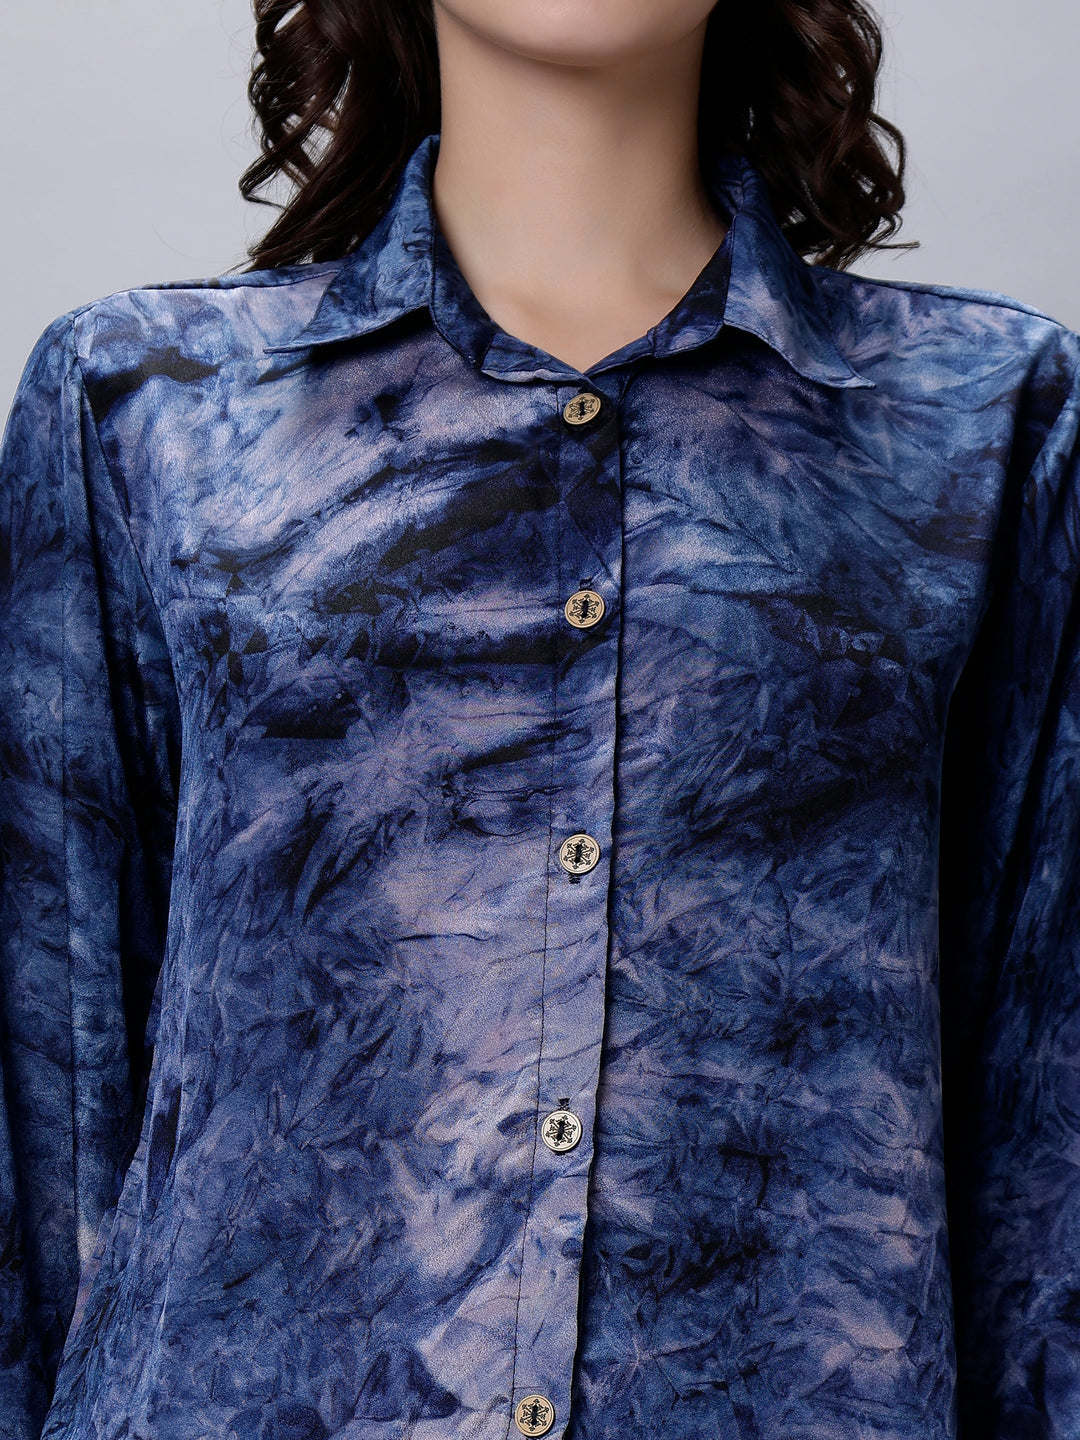 Blue Silk Crepe Tie-Dye Digital Printed Shirt